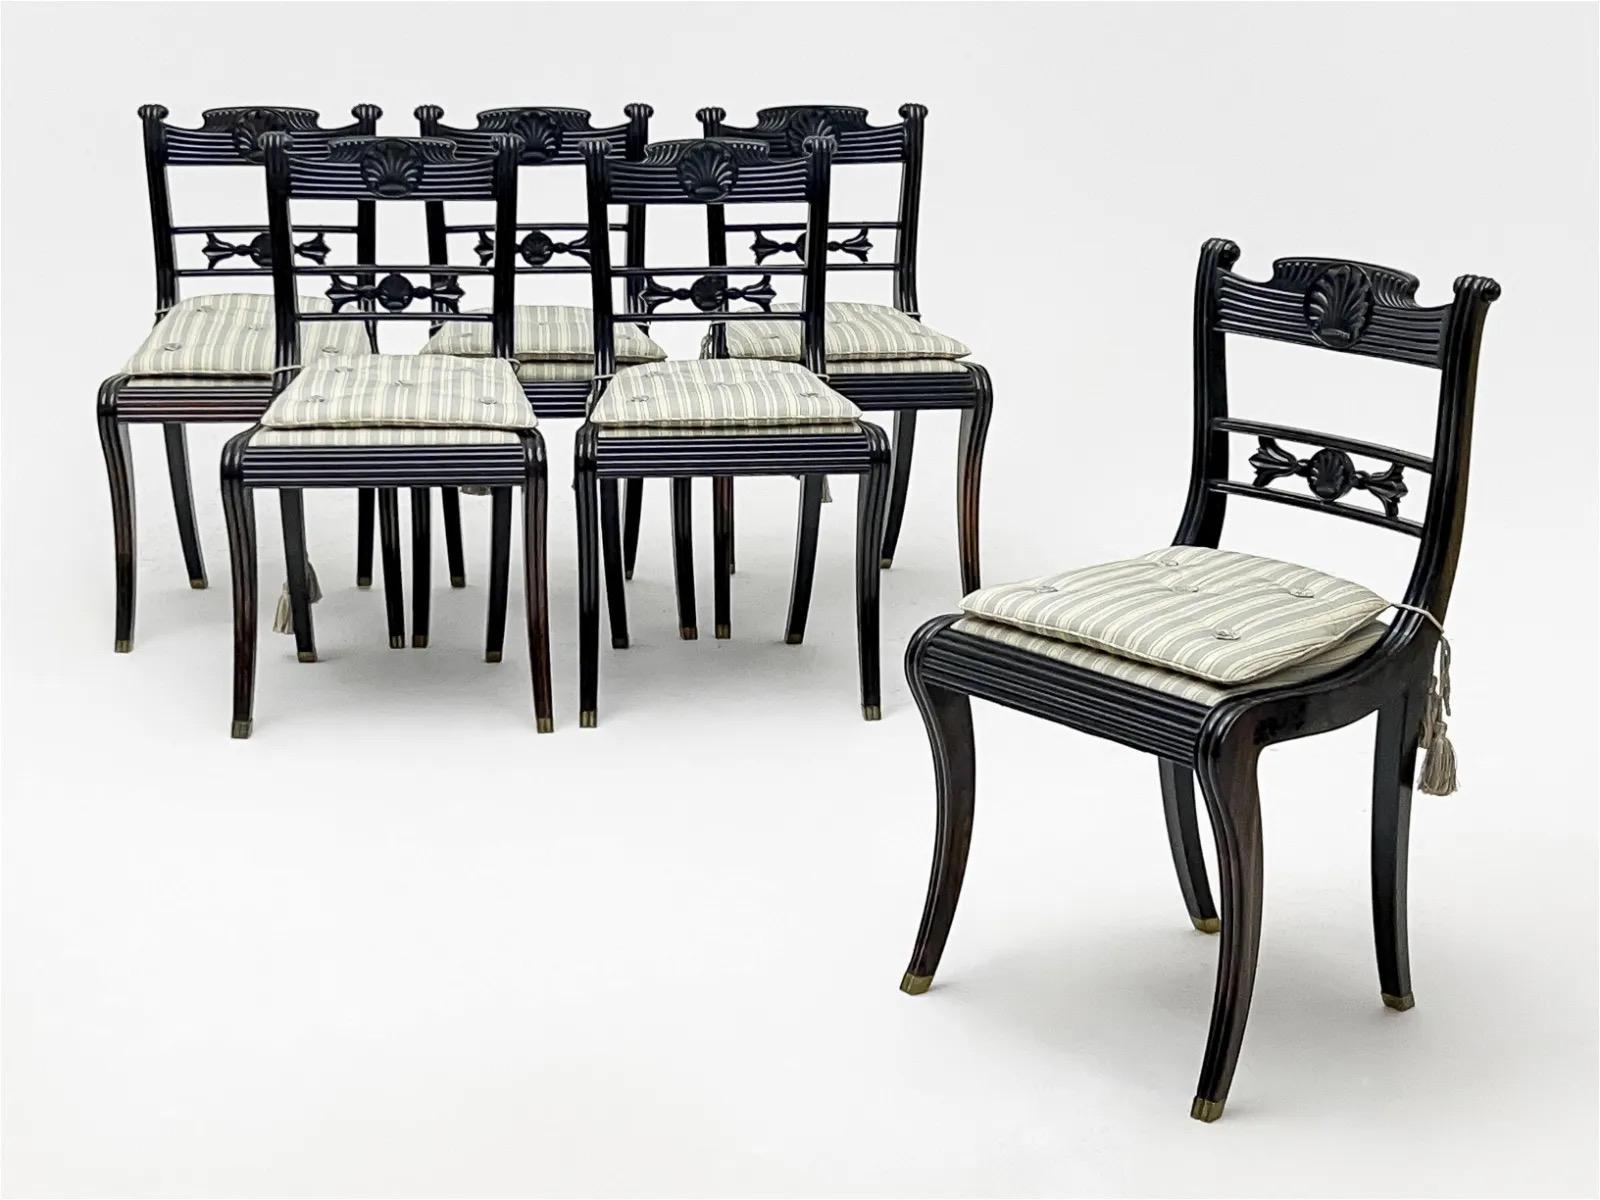 Rare et exquise série de chaises de salle à manger en ébène massif sculpté, fabriquées vers 1830 dans le district de Galle par les Anglo-Indiens, les Anglo-Ceylanais ou les Sri Lankais, de forme klismos néoclassique de style régence anglais, les